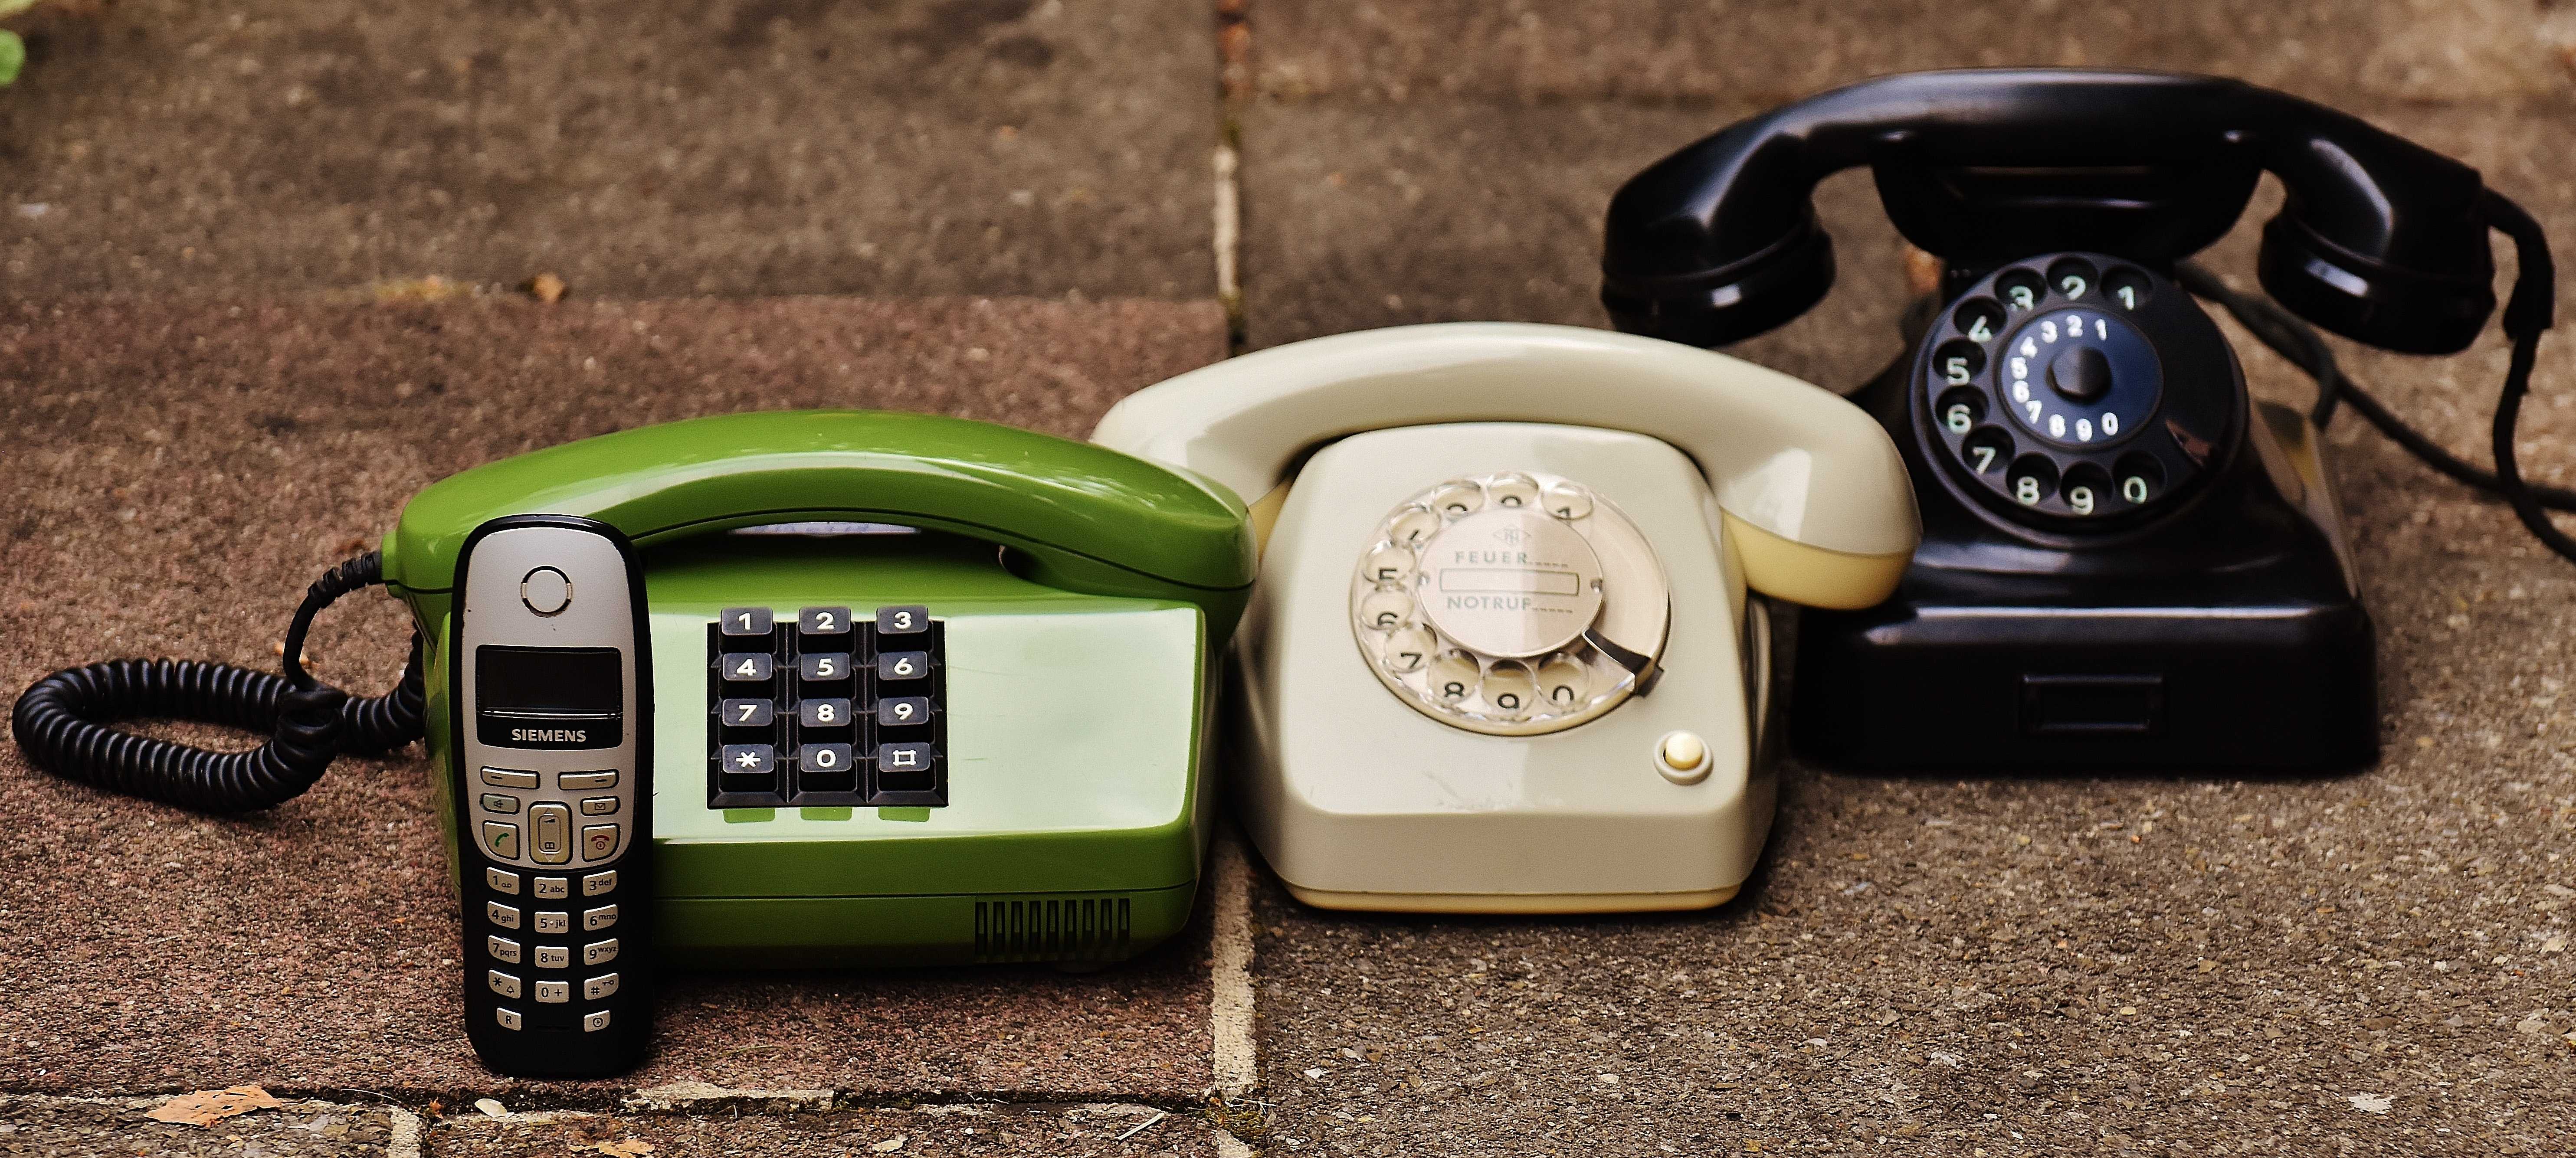 old telephones